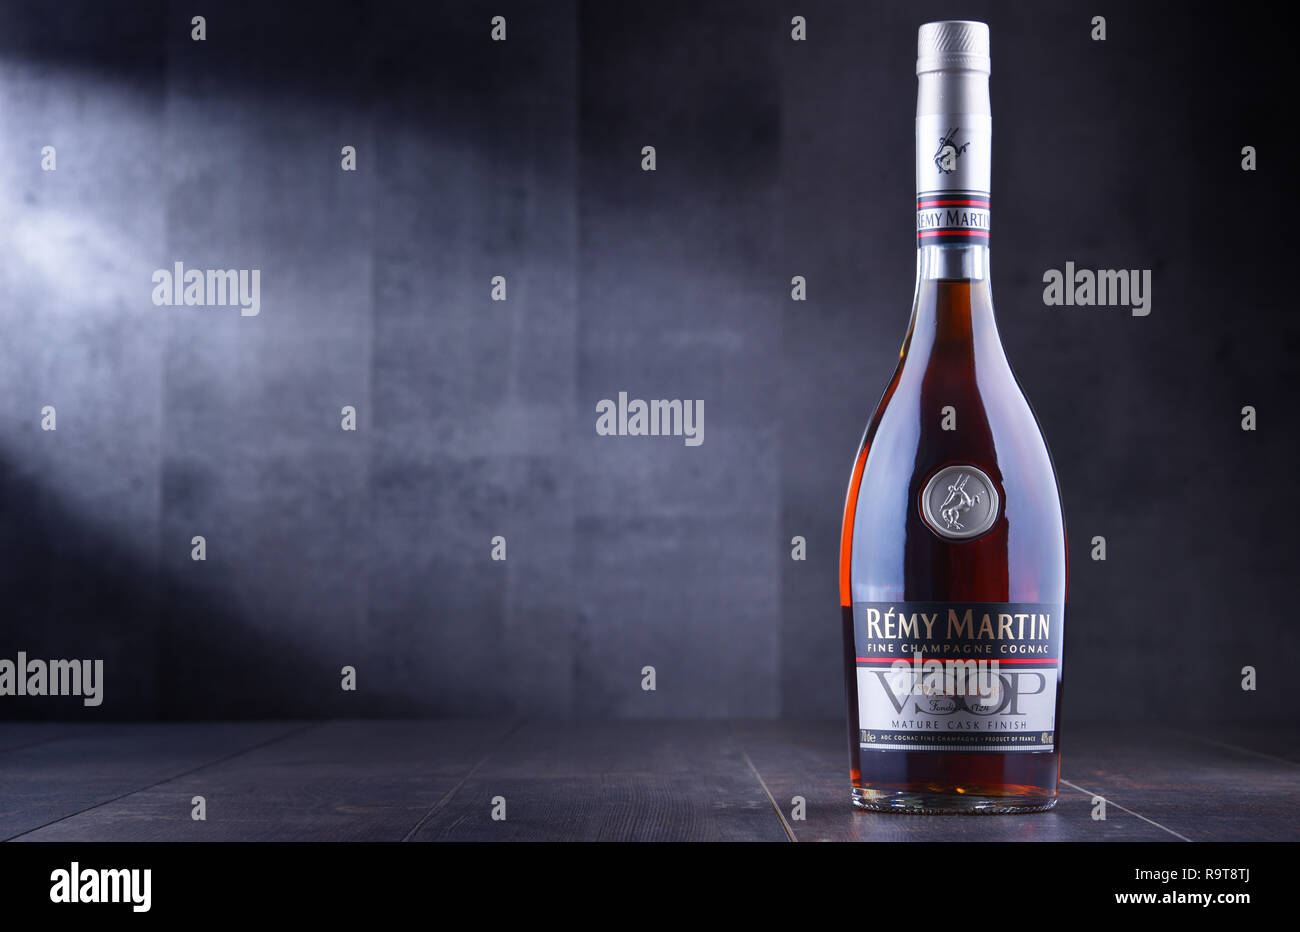 POZNAN, POL - May 30, 2018: Flasche Remy Martin, die Marke, die in Cognac Fine Champagne spezialisiert hat. Stockfoto